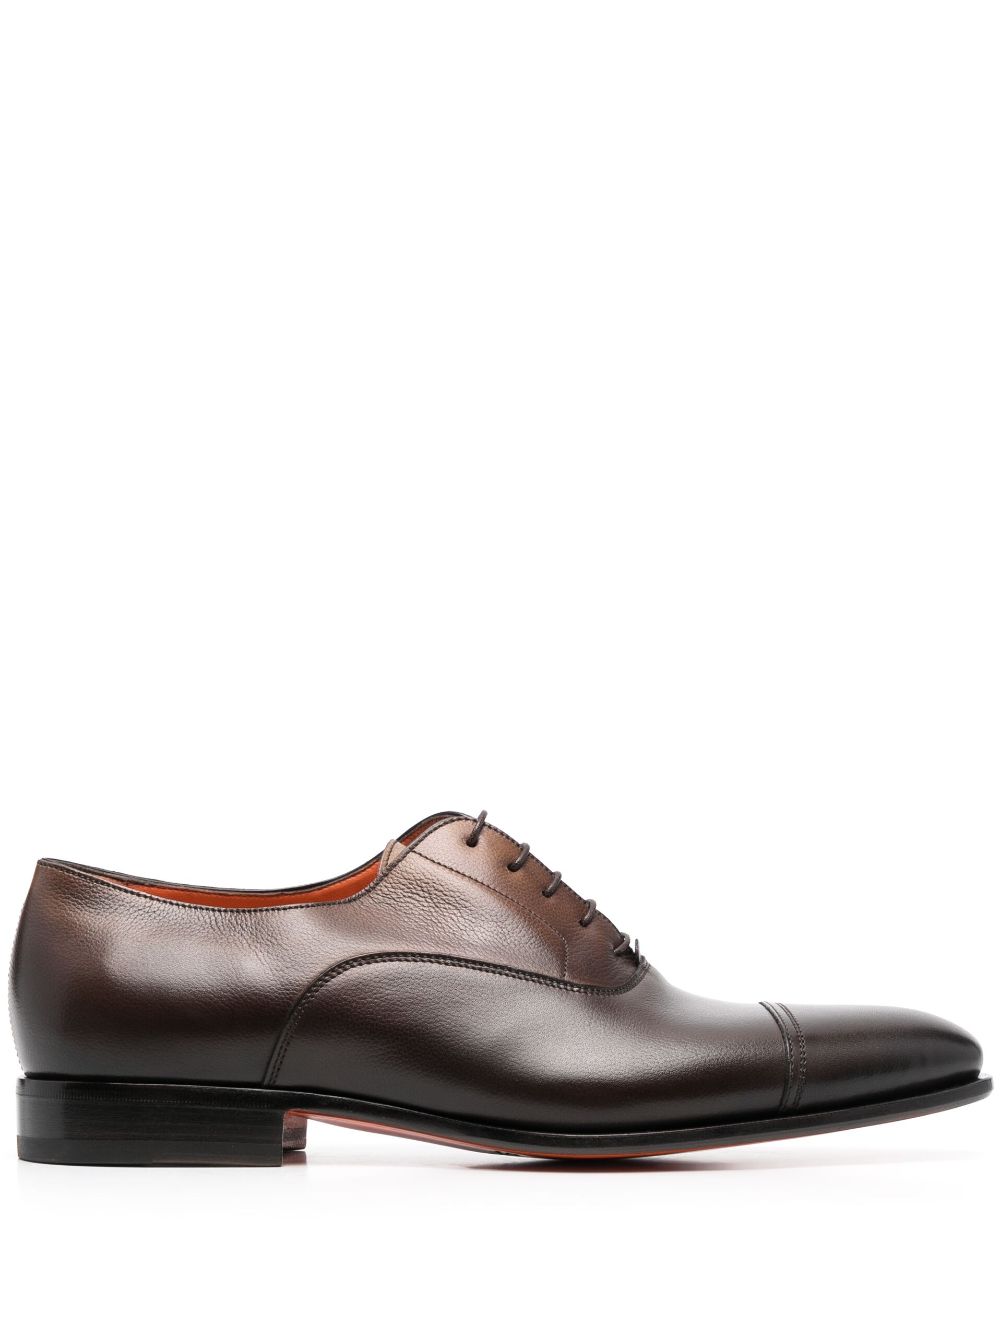 Santoni gradient-effect leather oxford shoes - Brown von Santoni